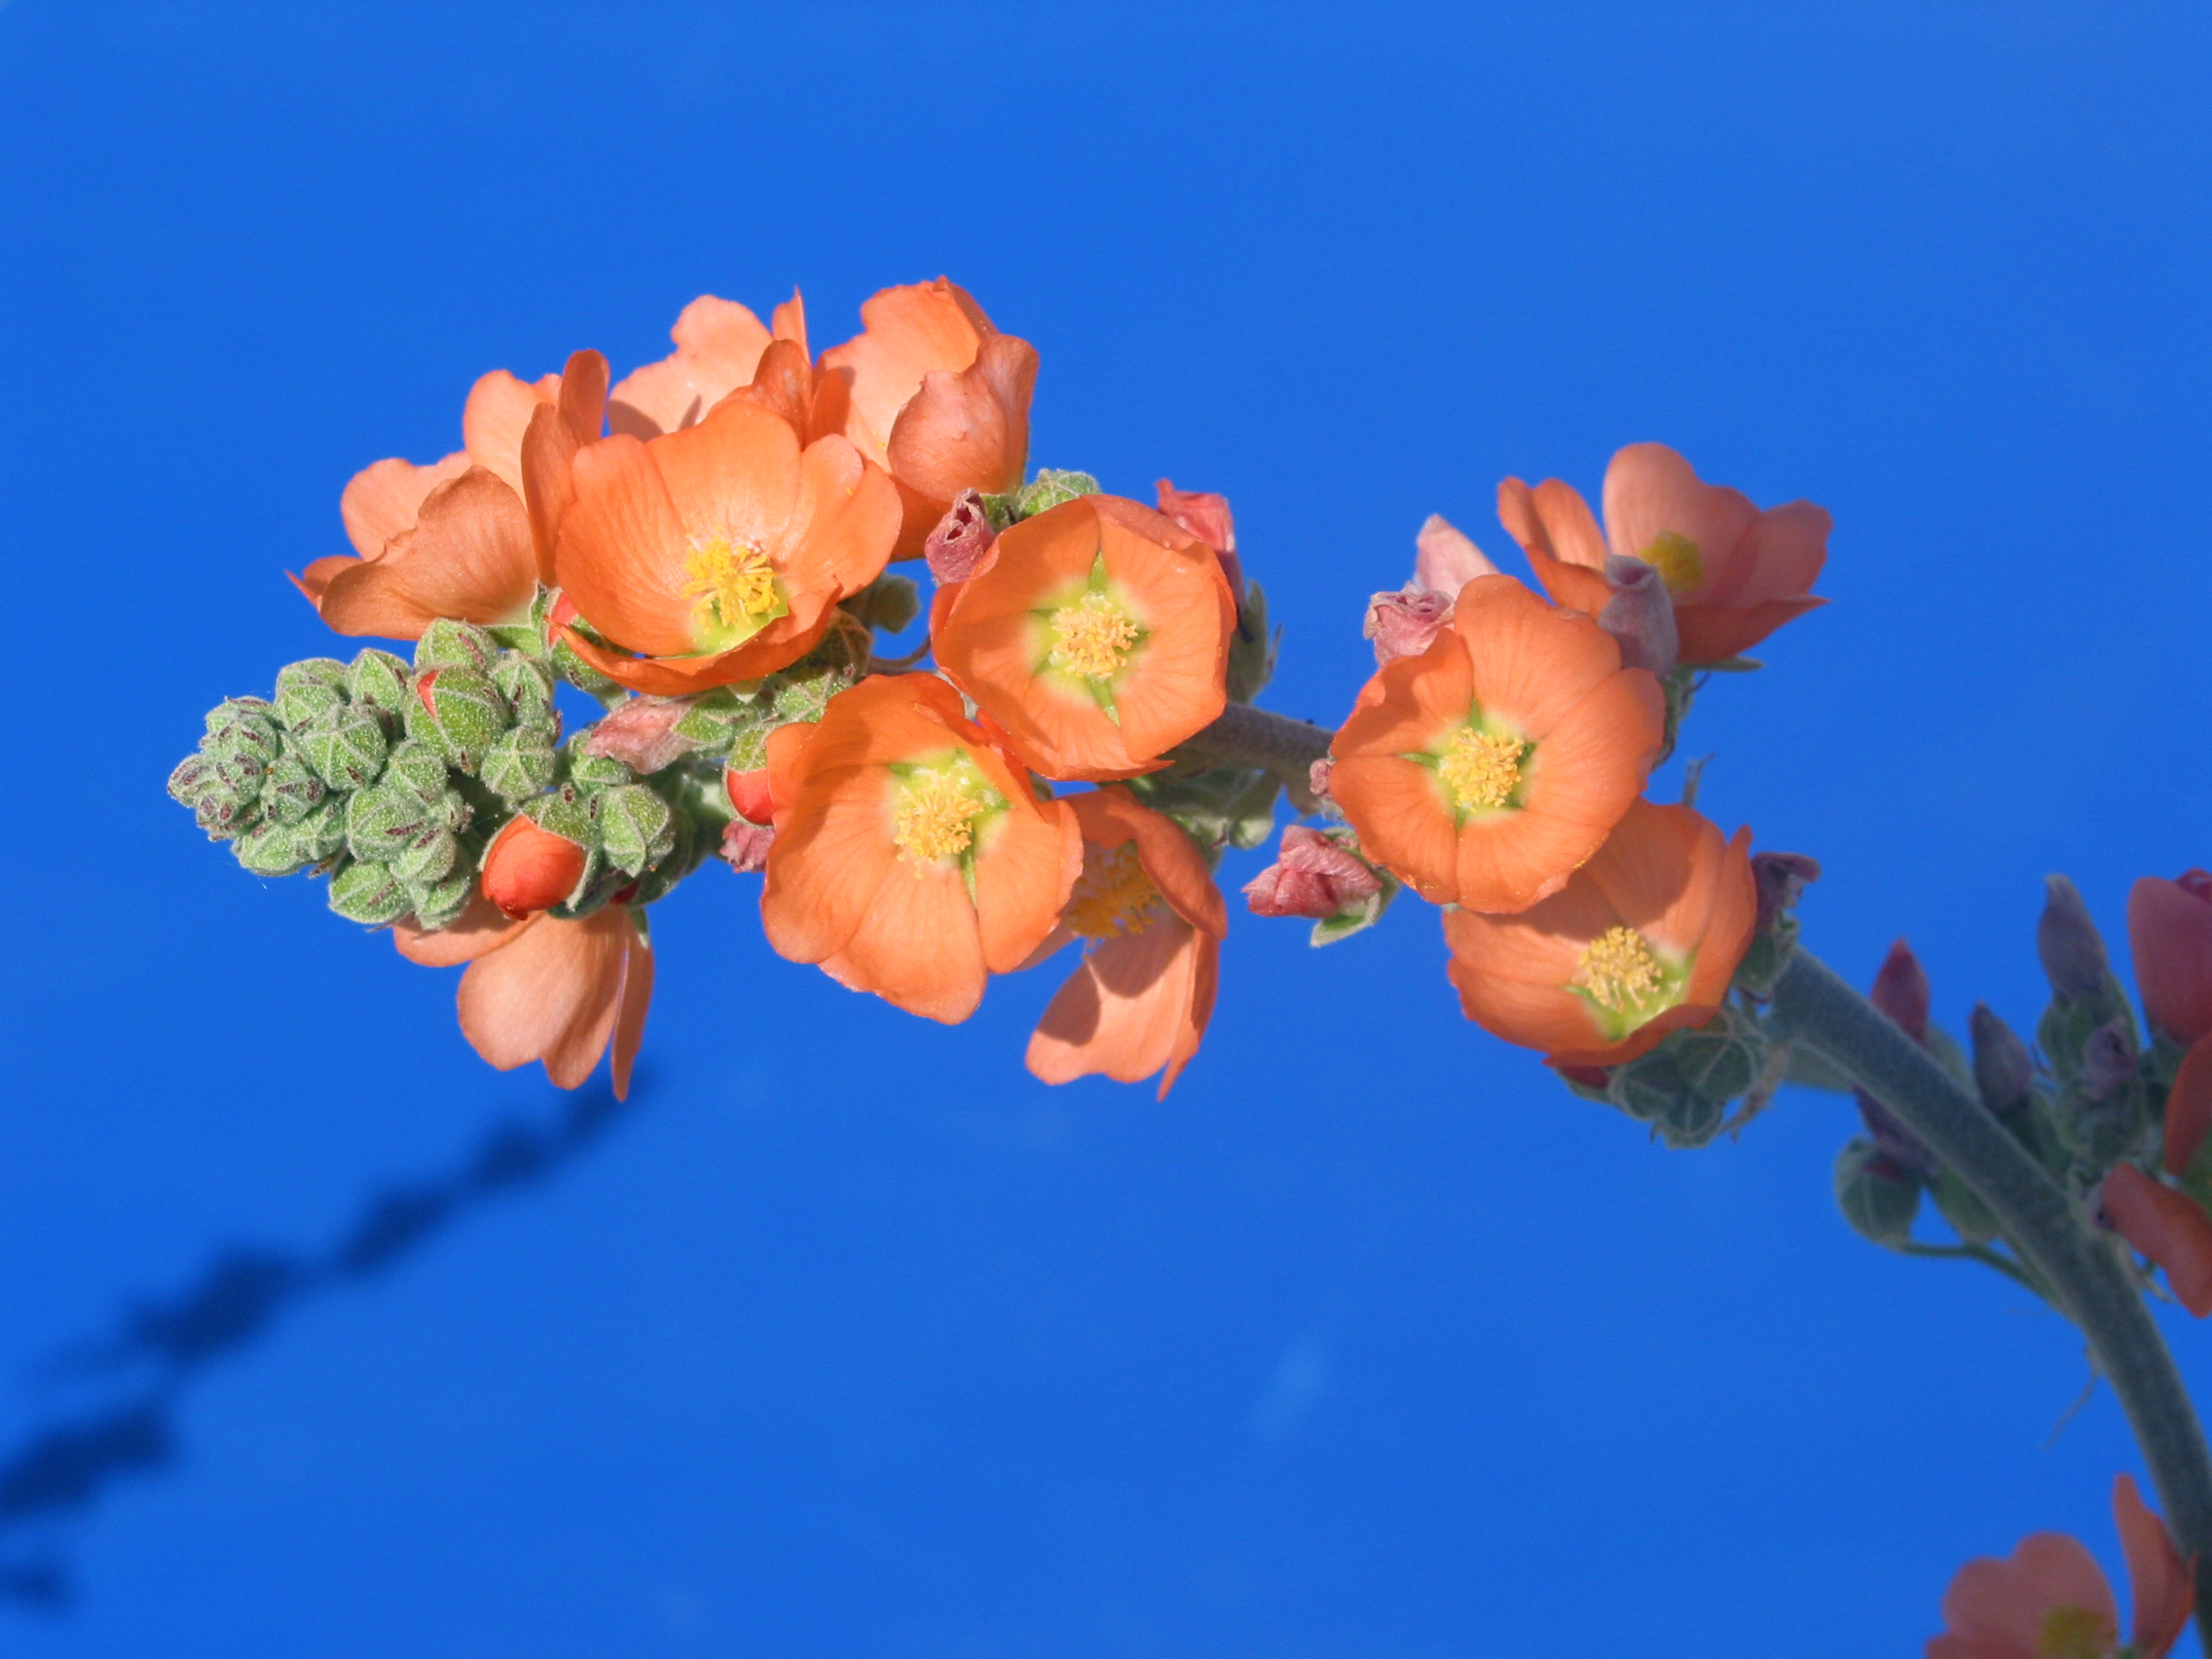 gooseberryleaf globemallow (Sphaeralcea grossulariifolia)